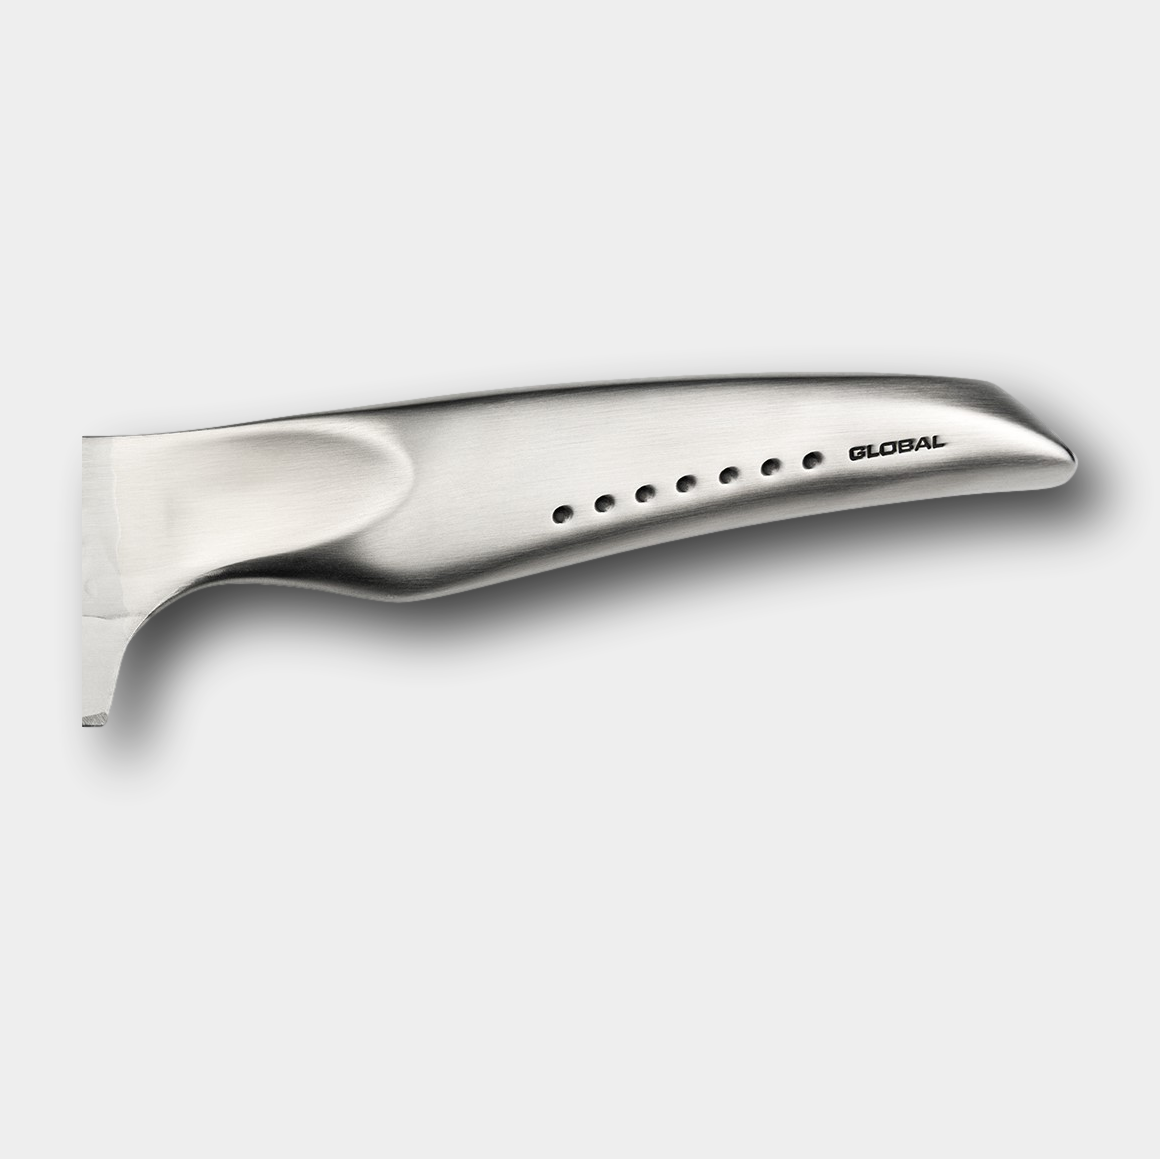 Global Sai Cook's Knife 19cm